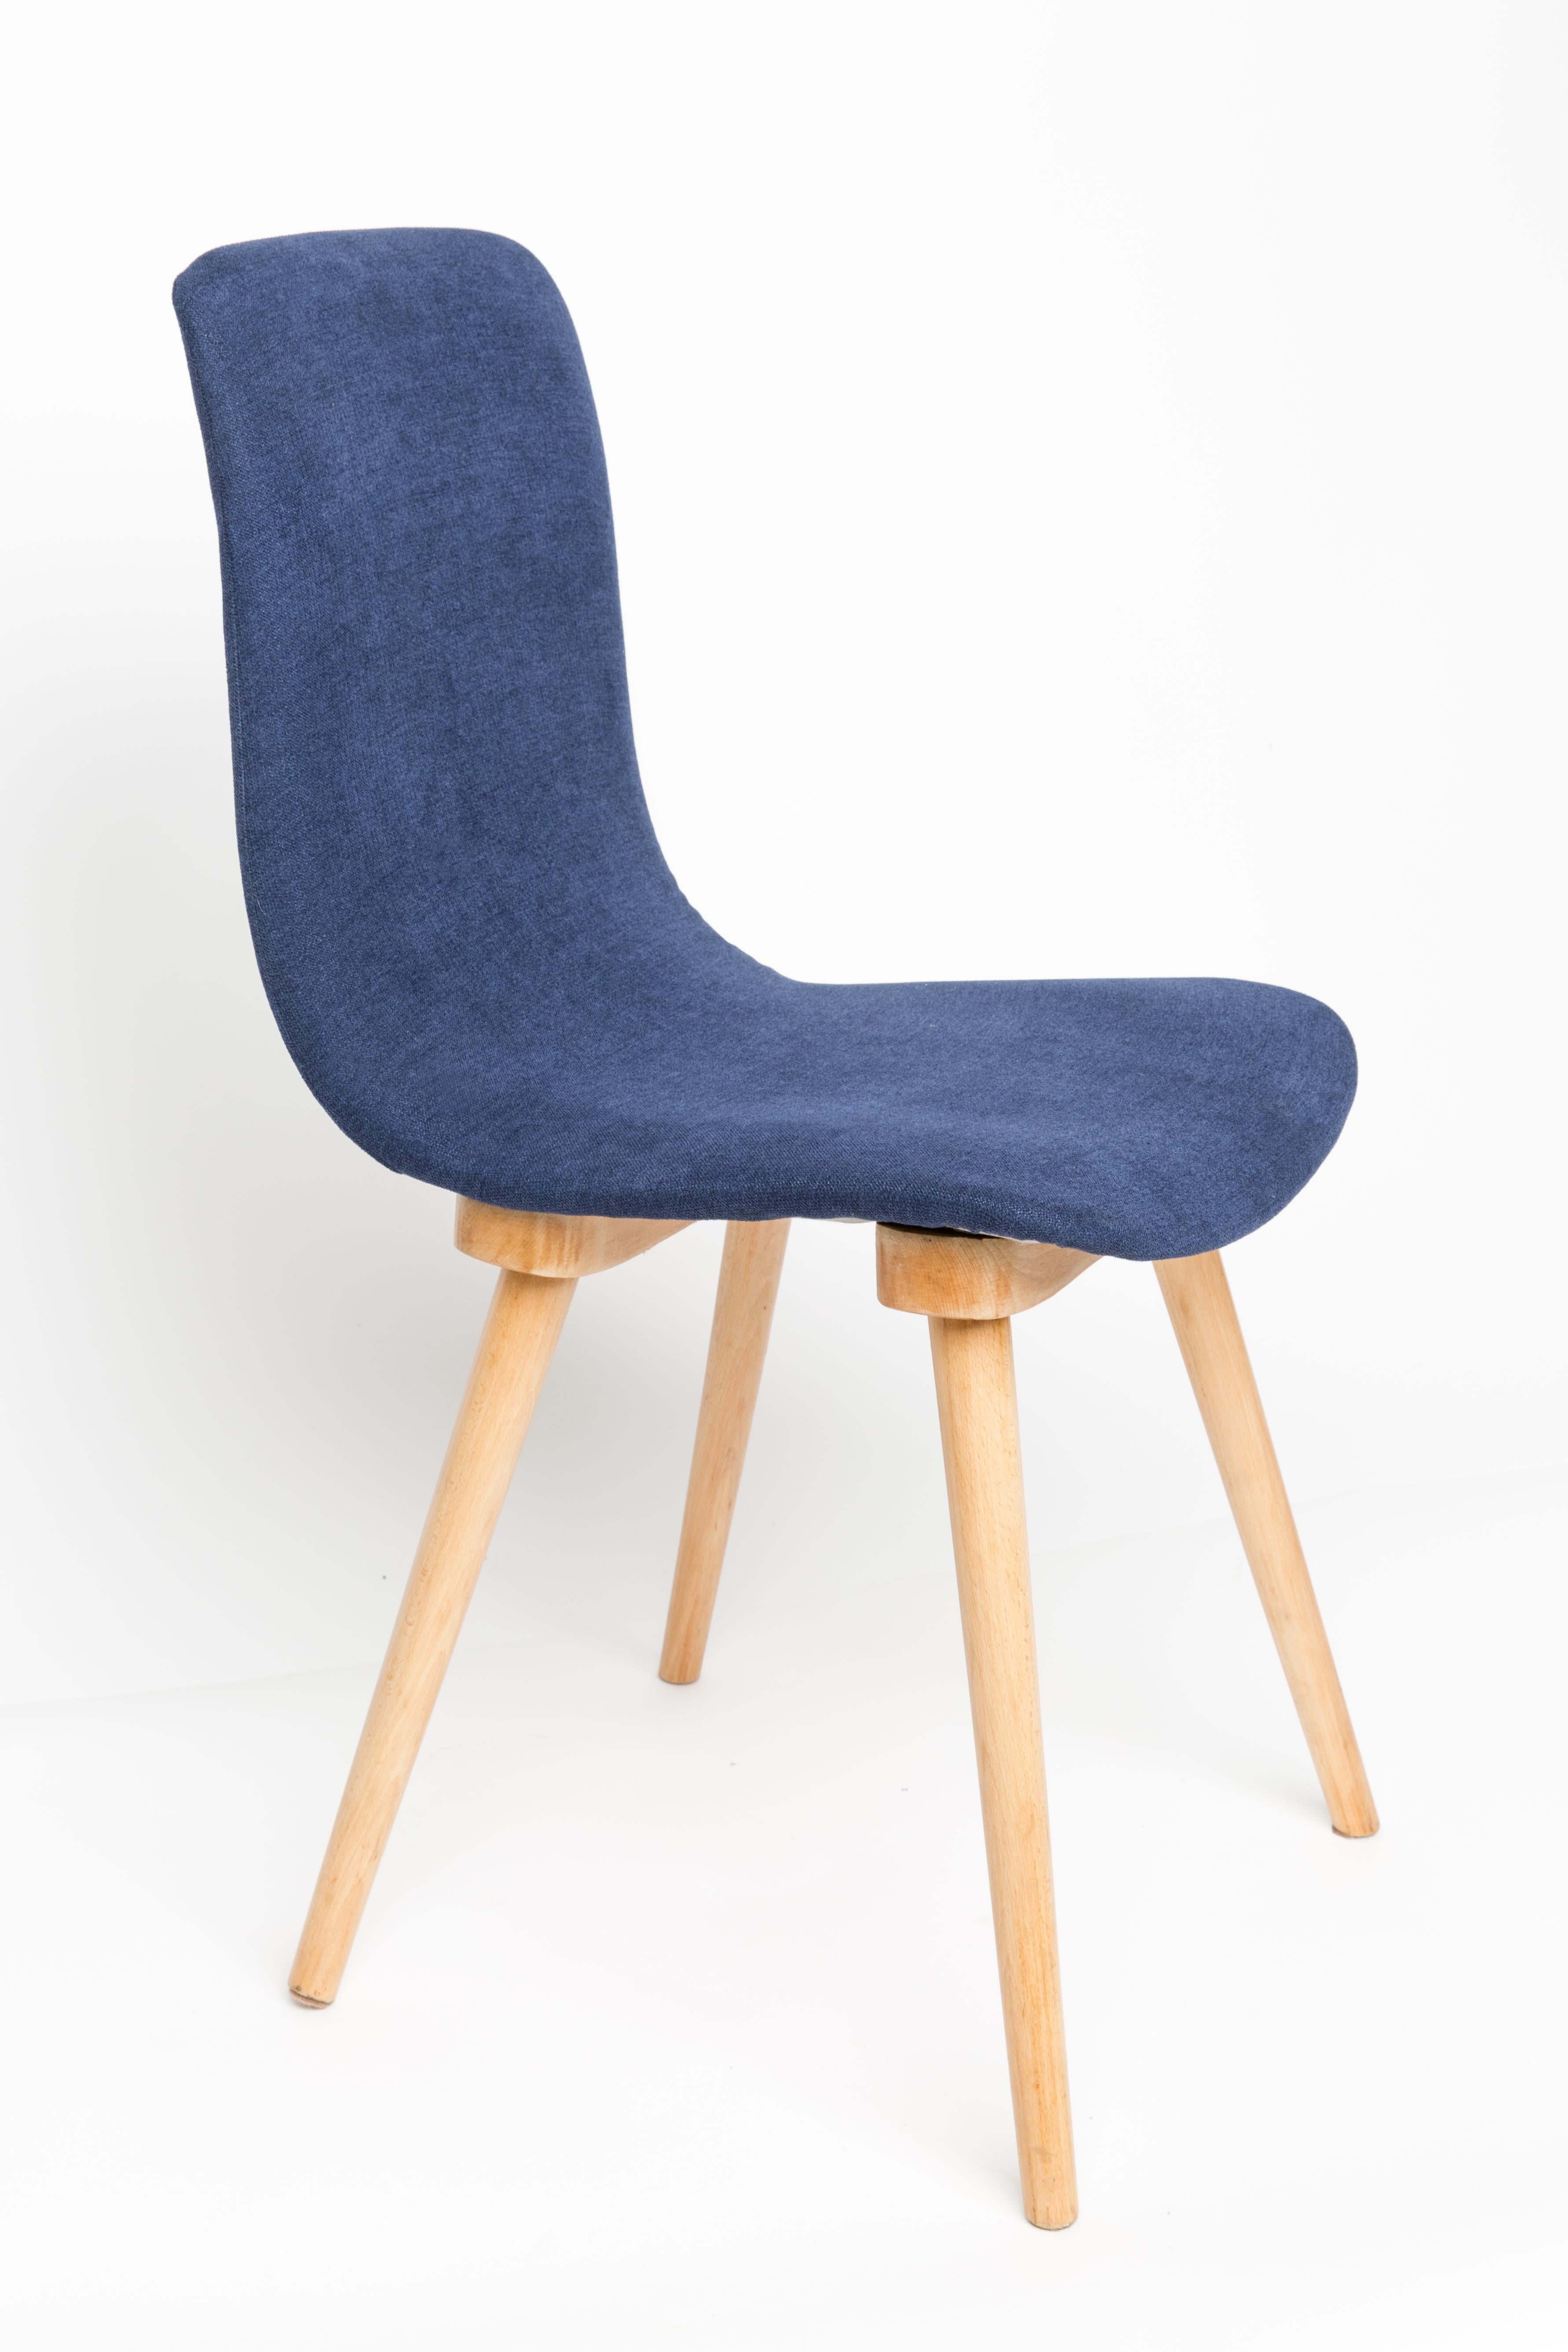 Bequemer Stuhl A6150, hergestellt in den späten 1960er Jahren von der Möbelfabrik 